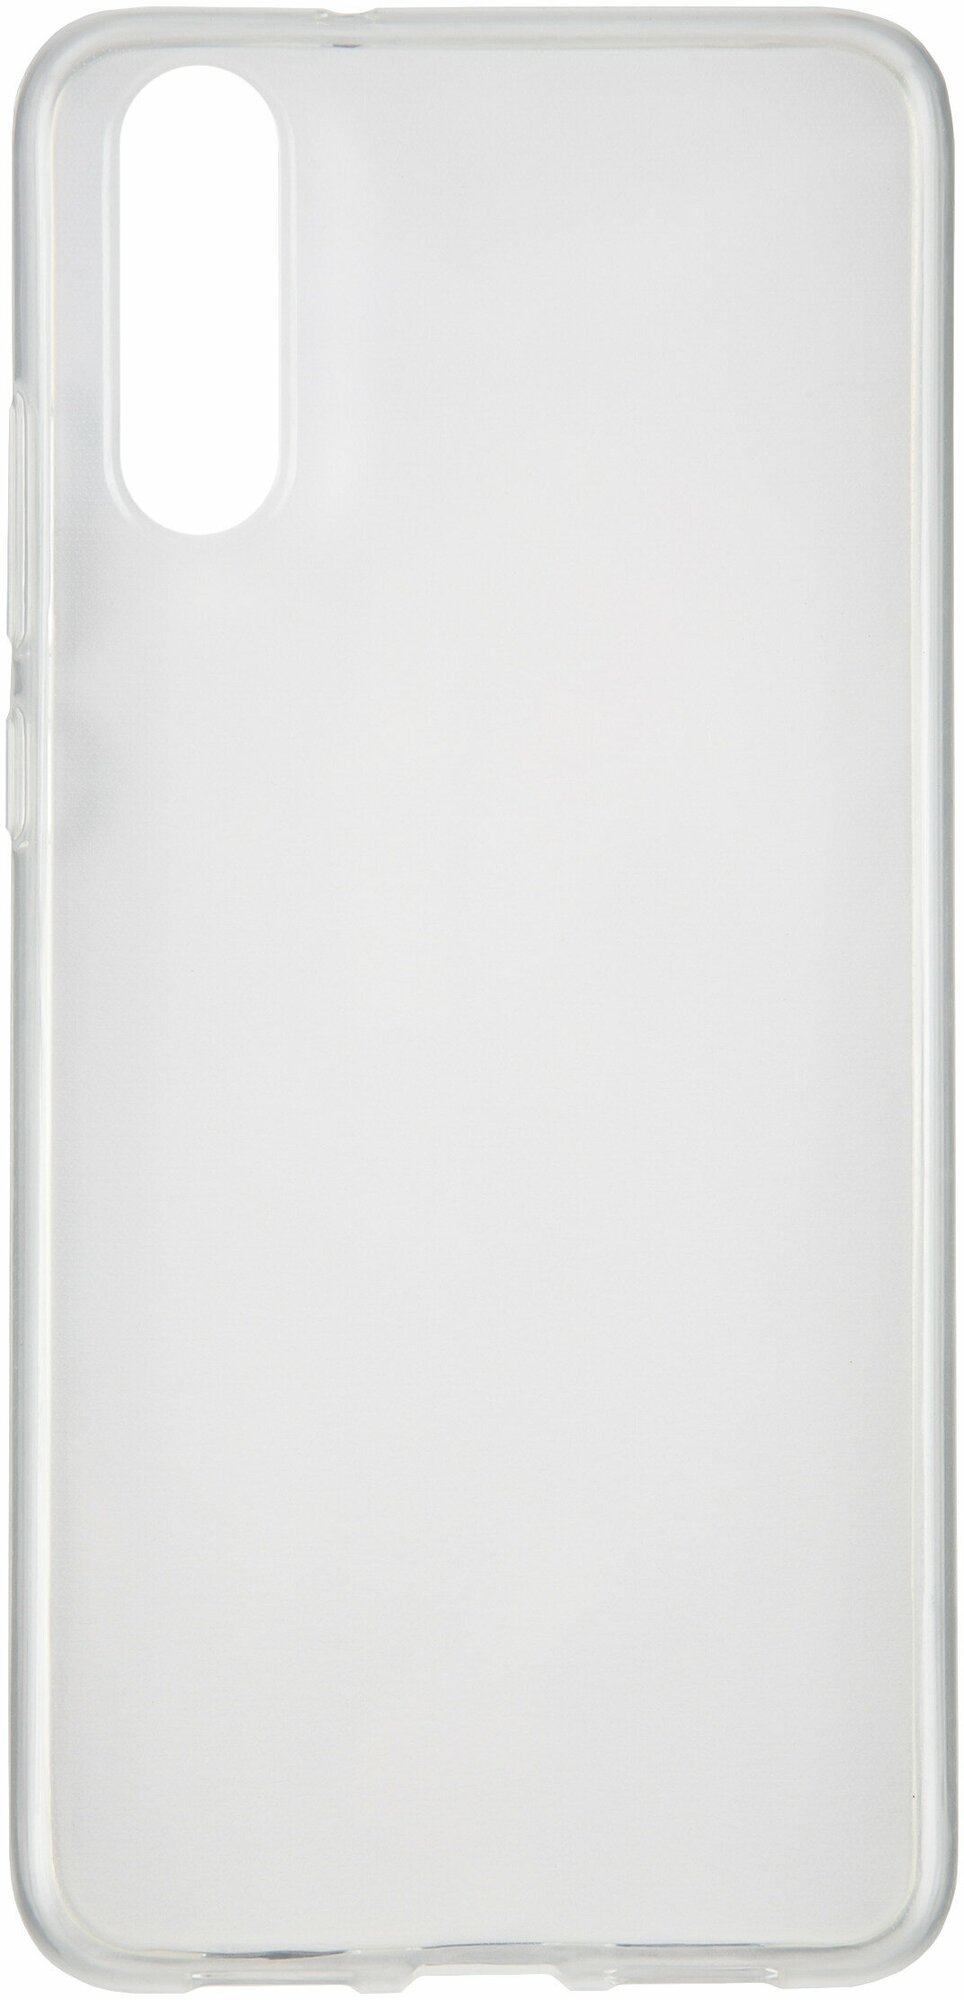 Защитный чехол-бампер, Накладка на Huawei P20; прозрачный/ на Хуавэй П20/ Силиконовый чехол на Huawei P20 /Накладка на смартфон/Huawei/Хуавей